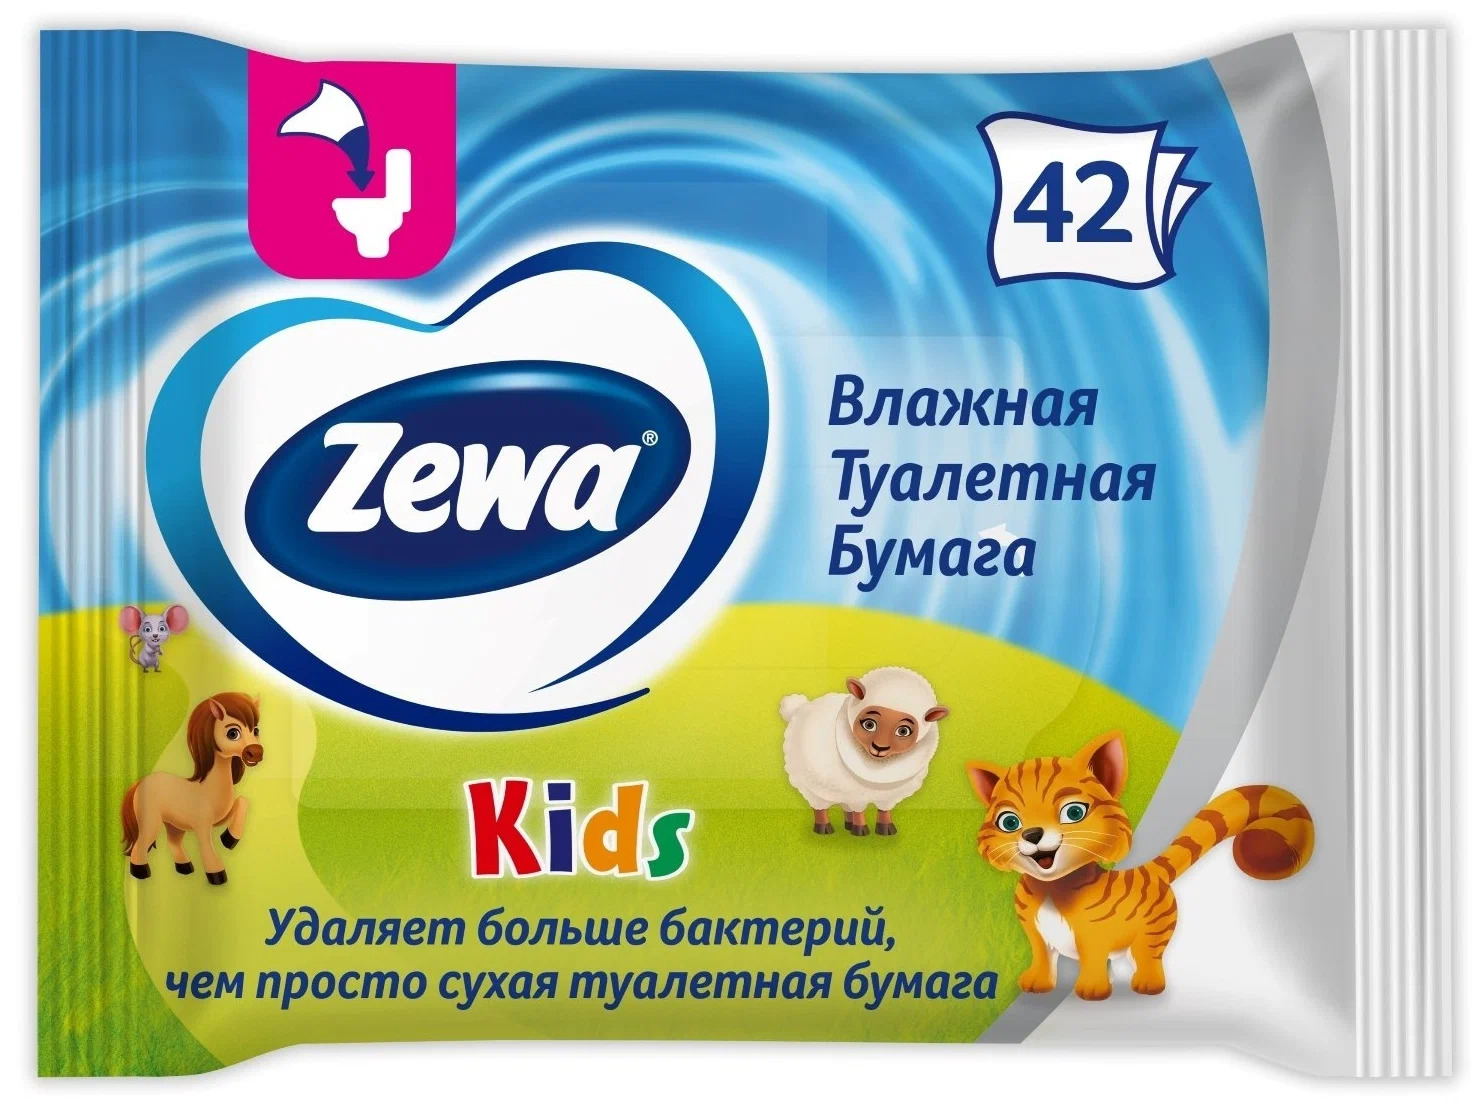 Бумага туалетная влажная Zewa Kids, 42 шт. влажная туалетная бумага mon rulon 50 детская 2 уп